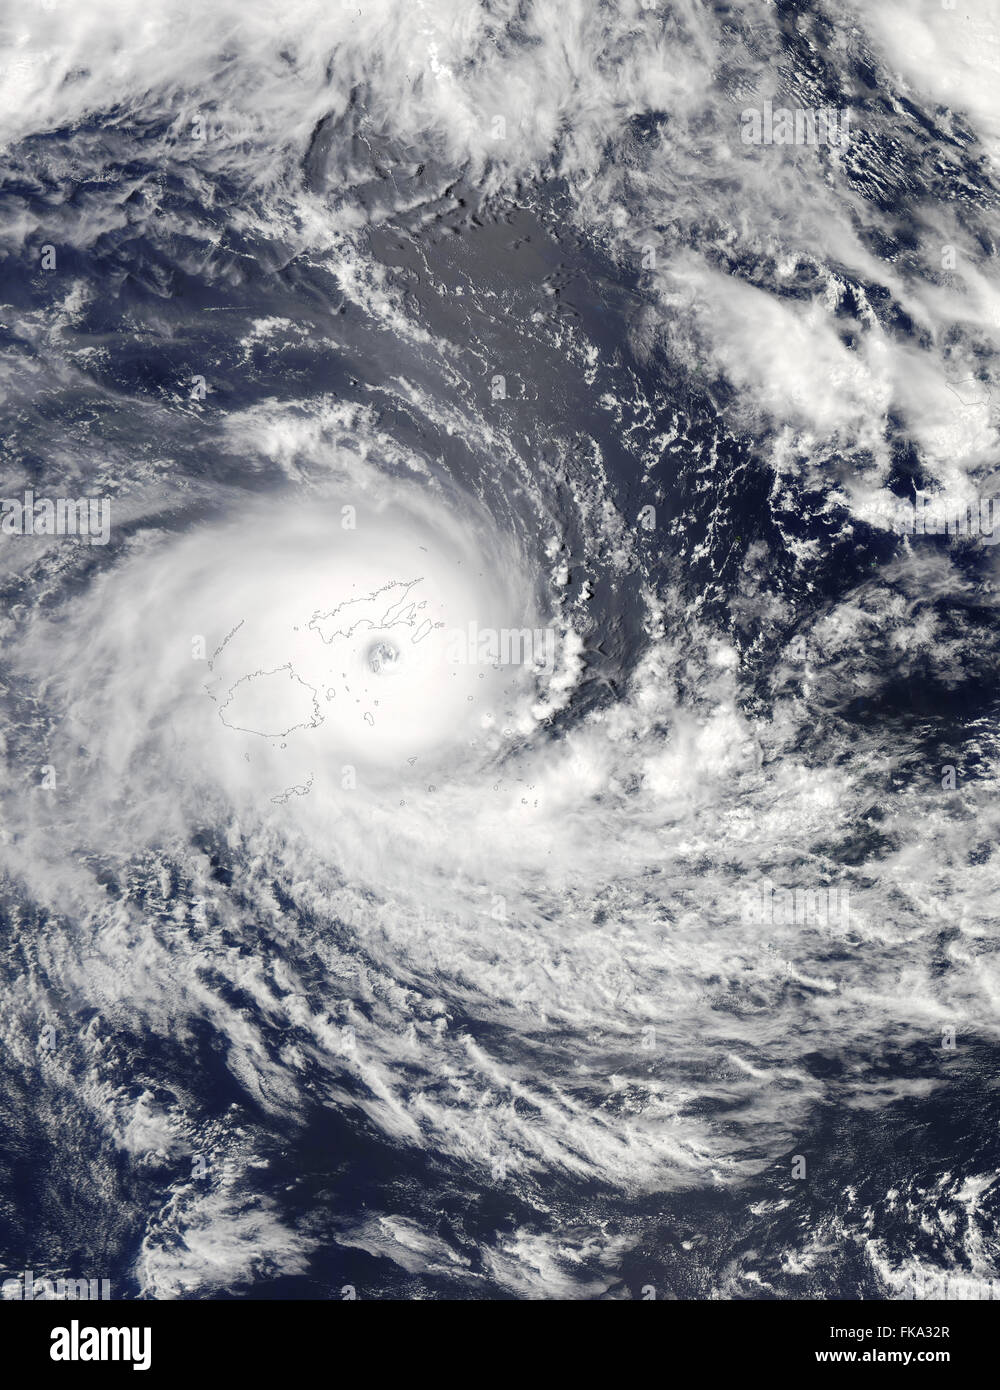 Imagen Satelital, Ciclón tropical de categoría 5 Winston, Islas Fiji, Pacífico Sur, 20 de febrero de 2016 Foto de stock